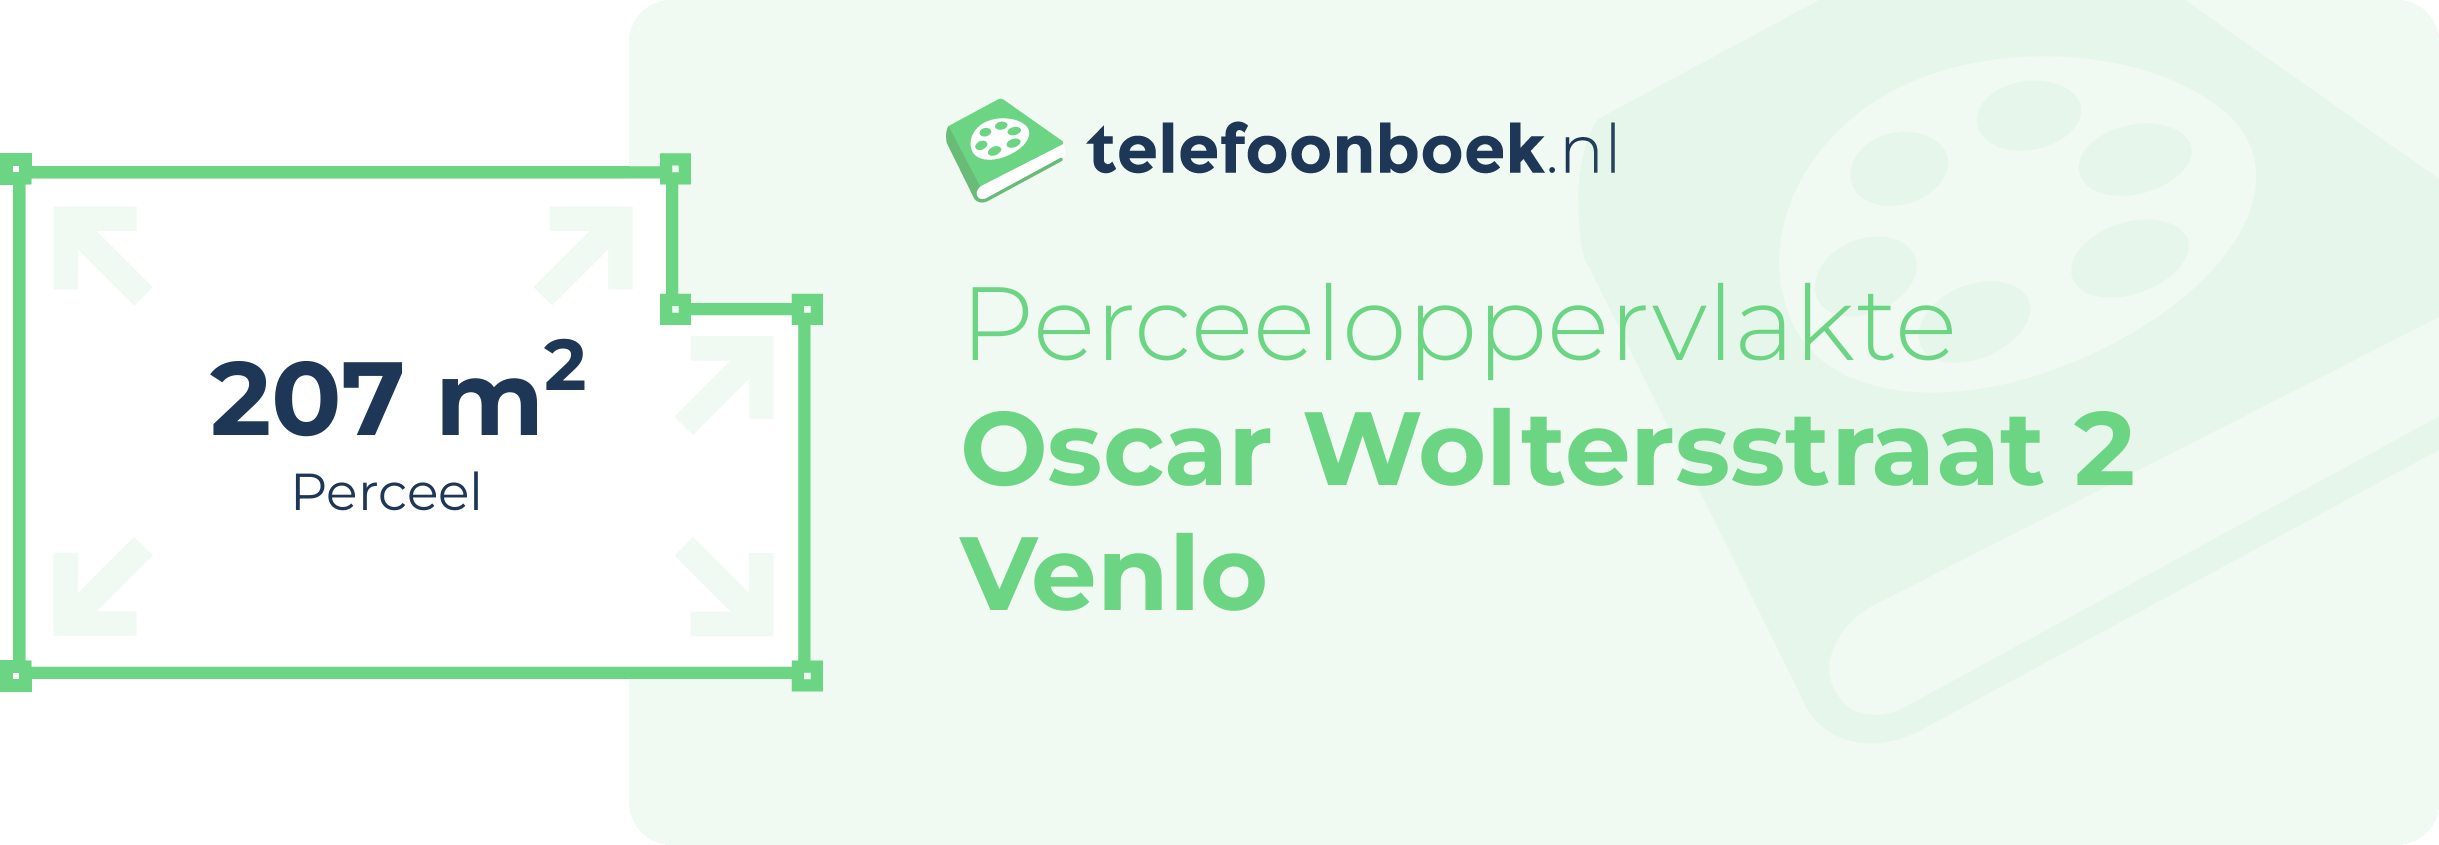 Perceeloppervlakte Oscar Woltersstraat 2 Venlo